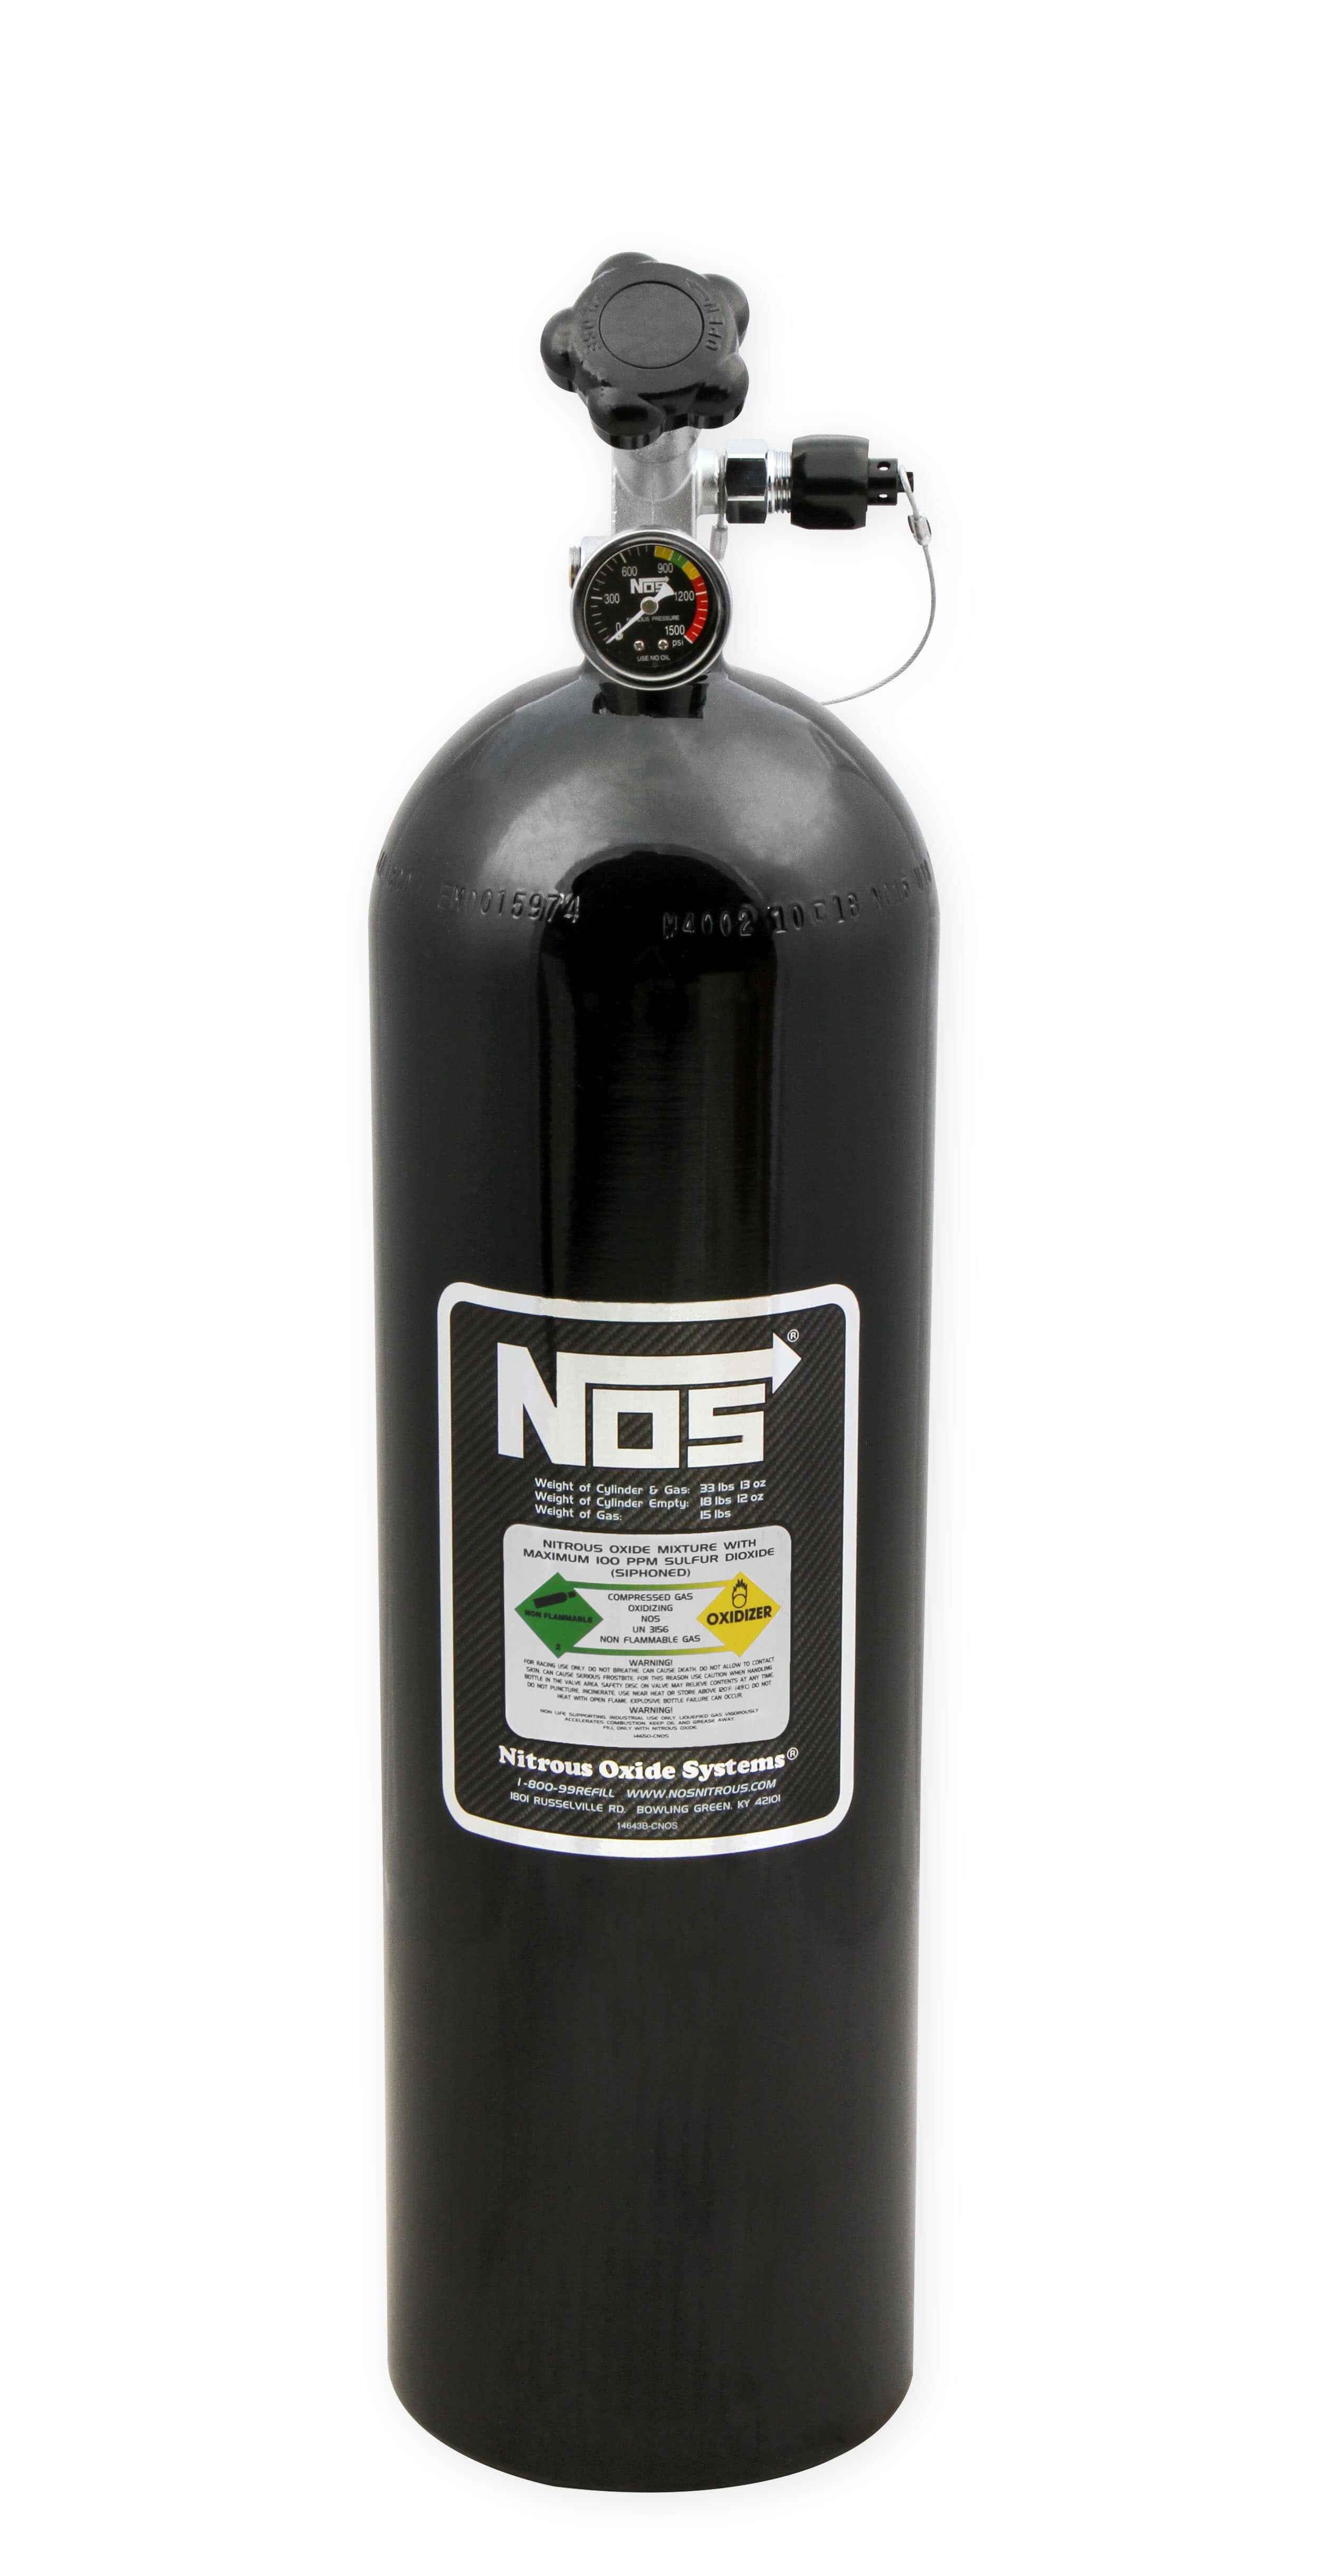 NOS 15 lb Super Hi-Flow Nitrous Bottle with Racer Safety Valve-Black